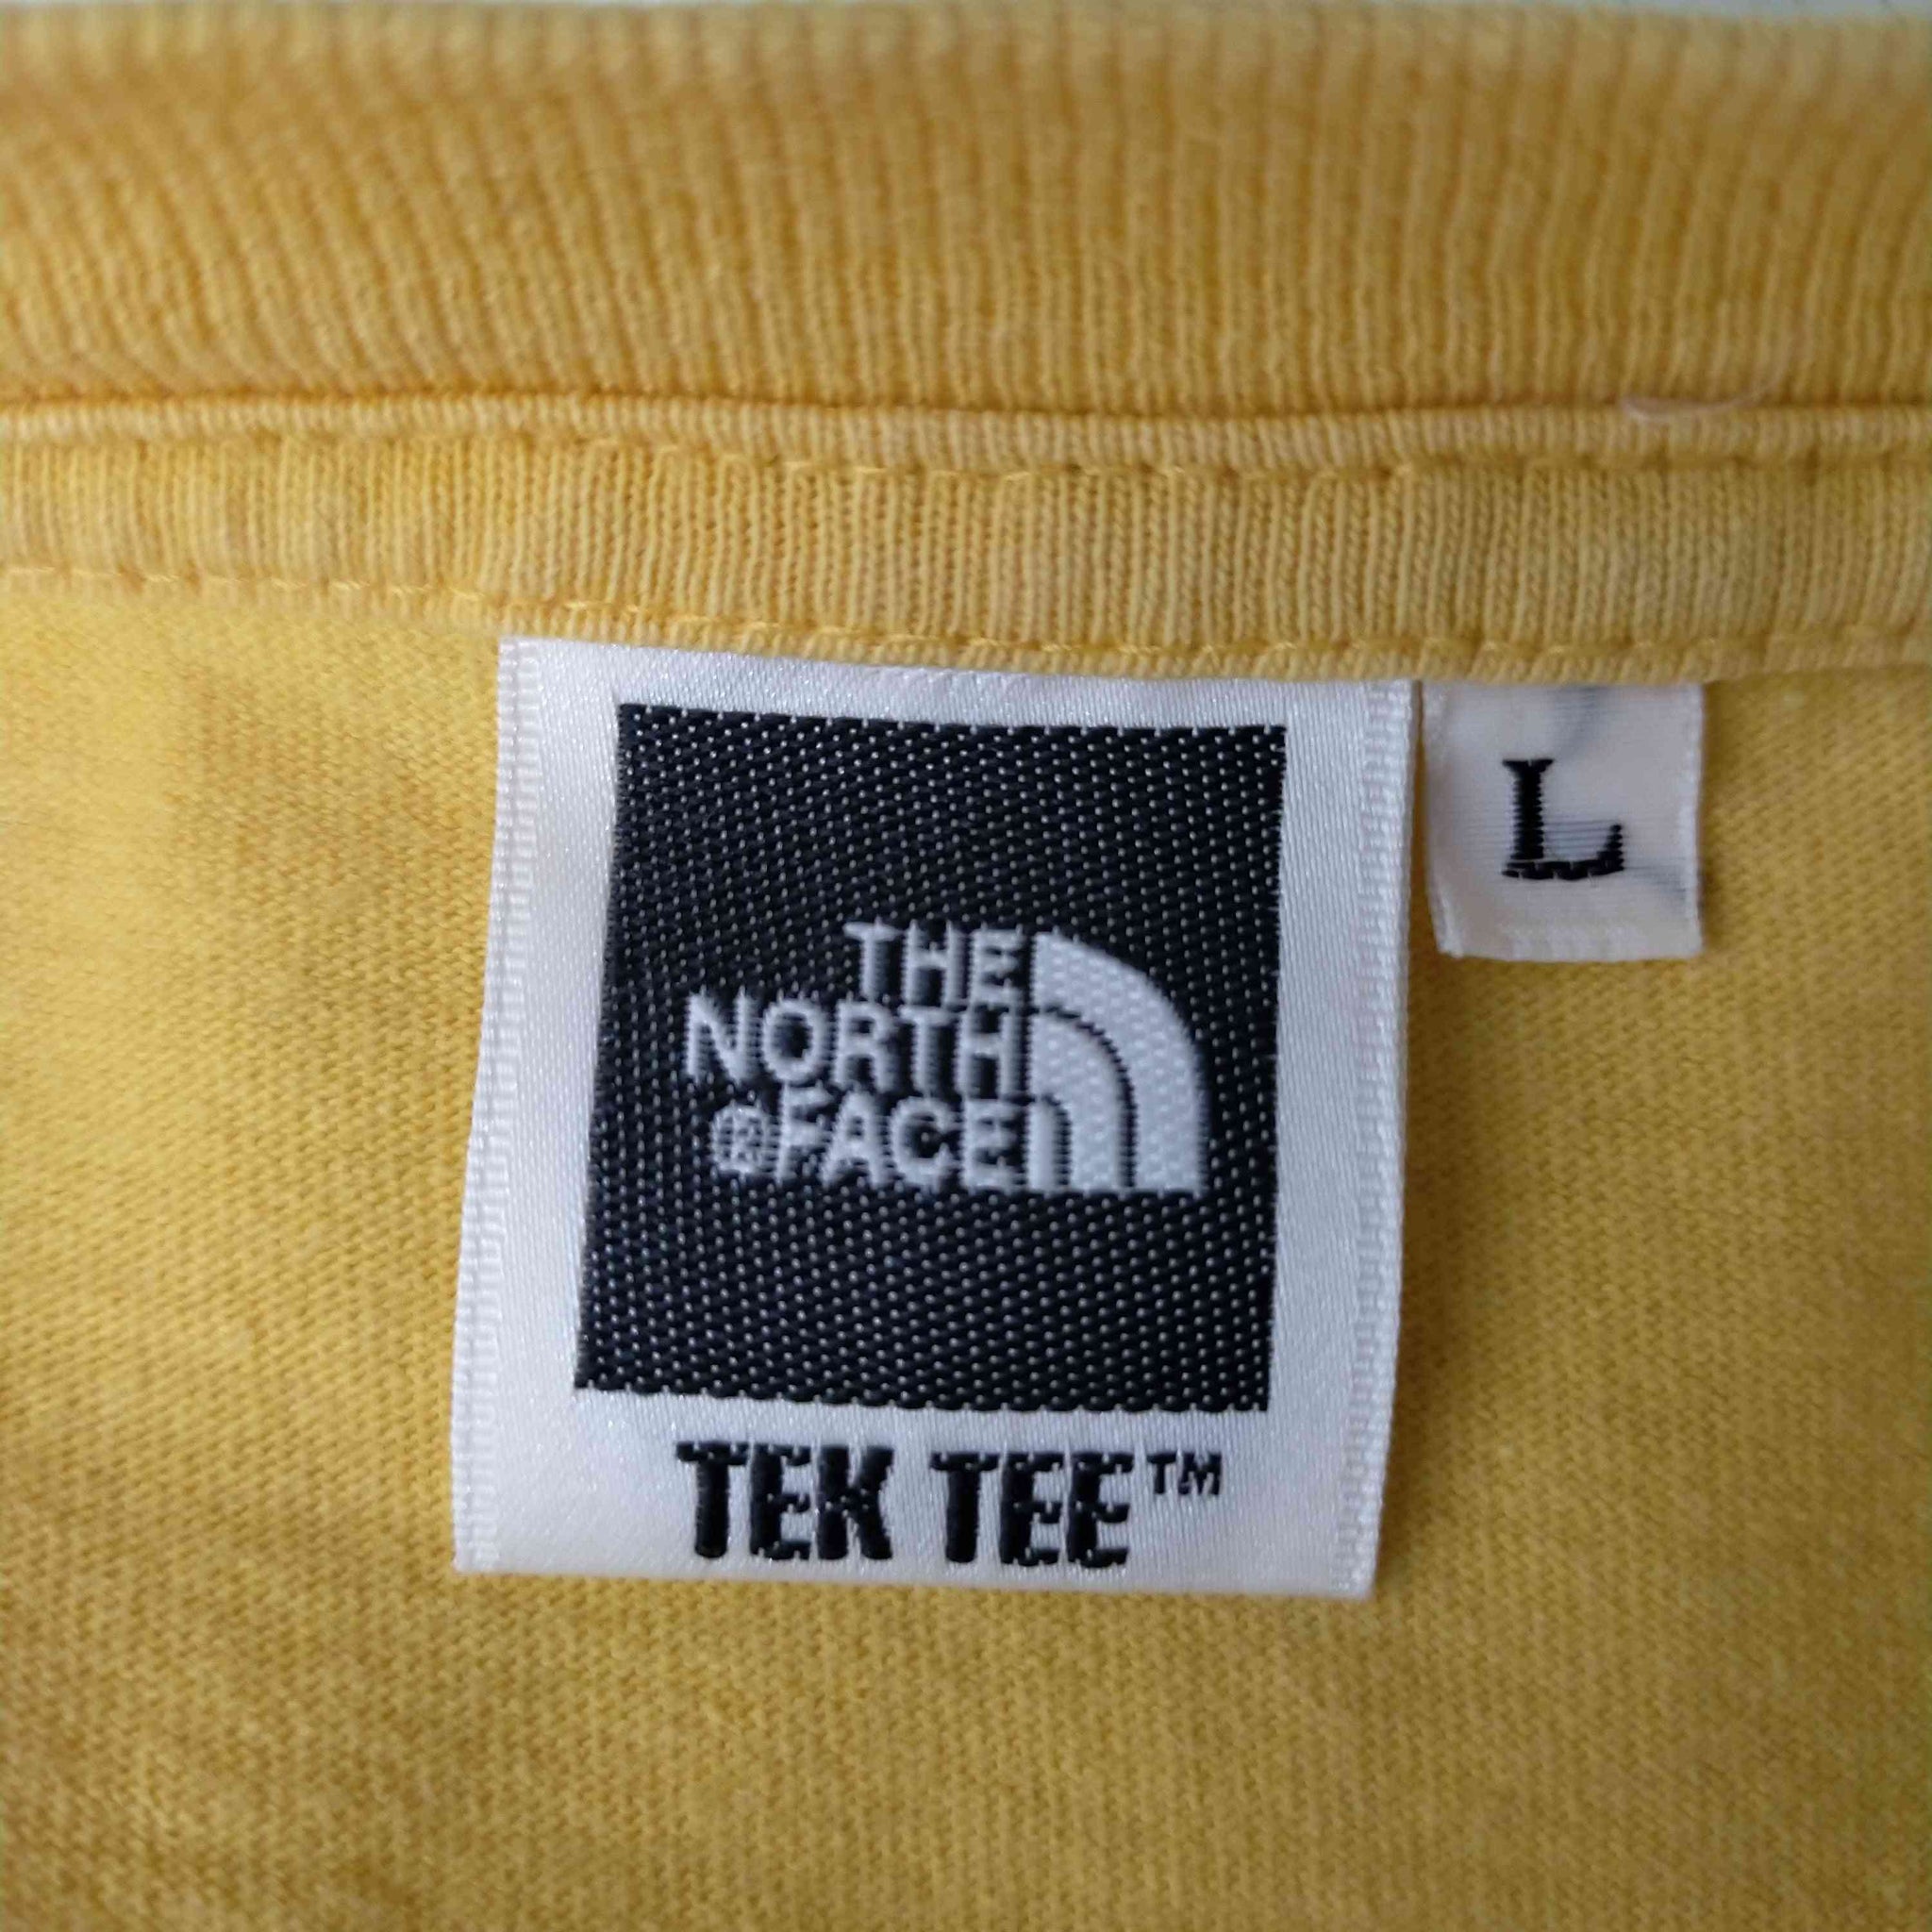 THE NORTH FACE(ザノースフェイス)90s TEK TEE クルーネックショートスリーブTシャツ